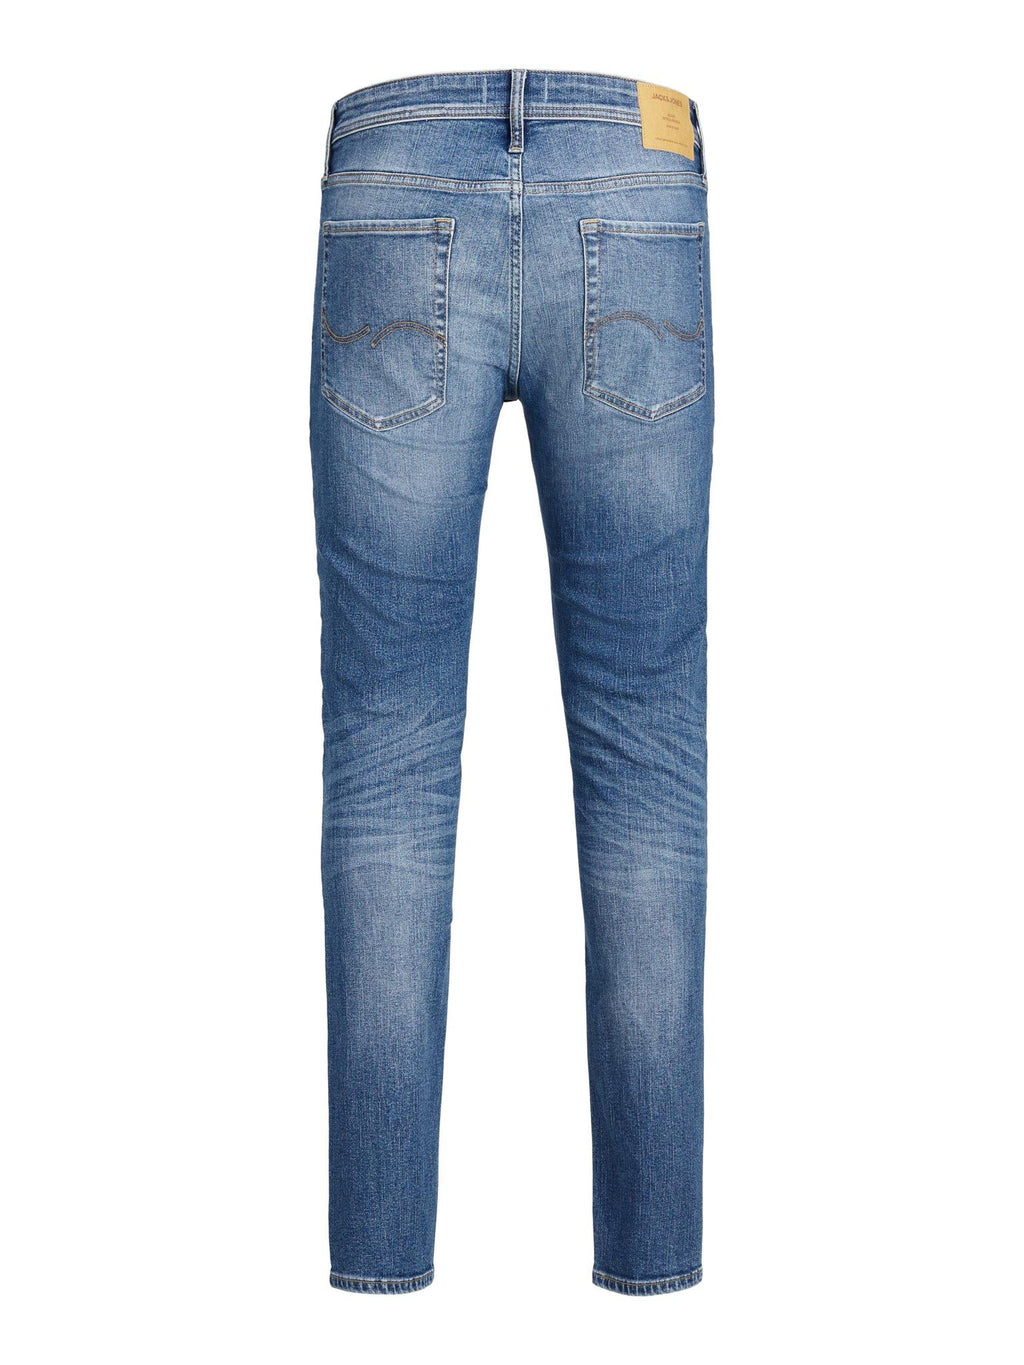 Liam Original Jeans 405 - Blue Denim